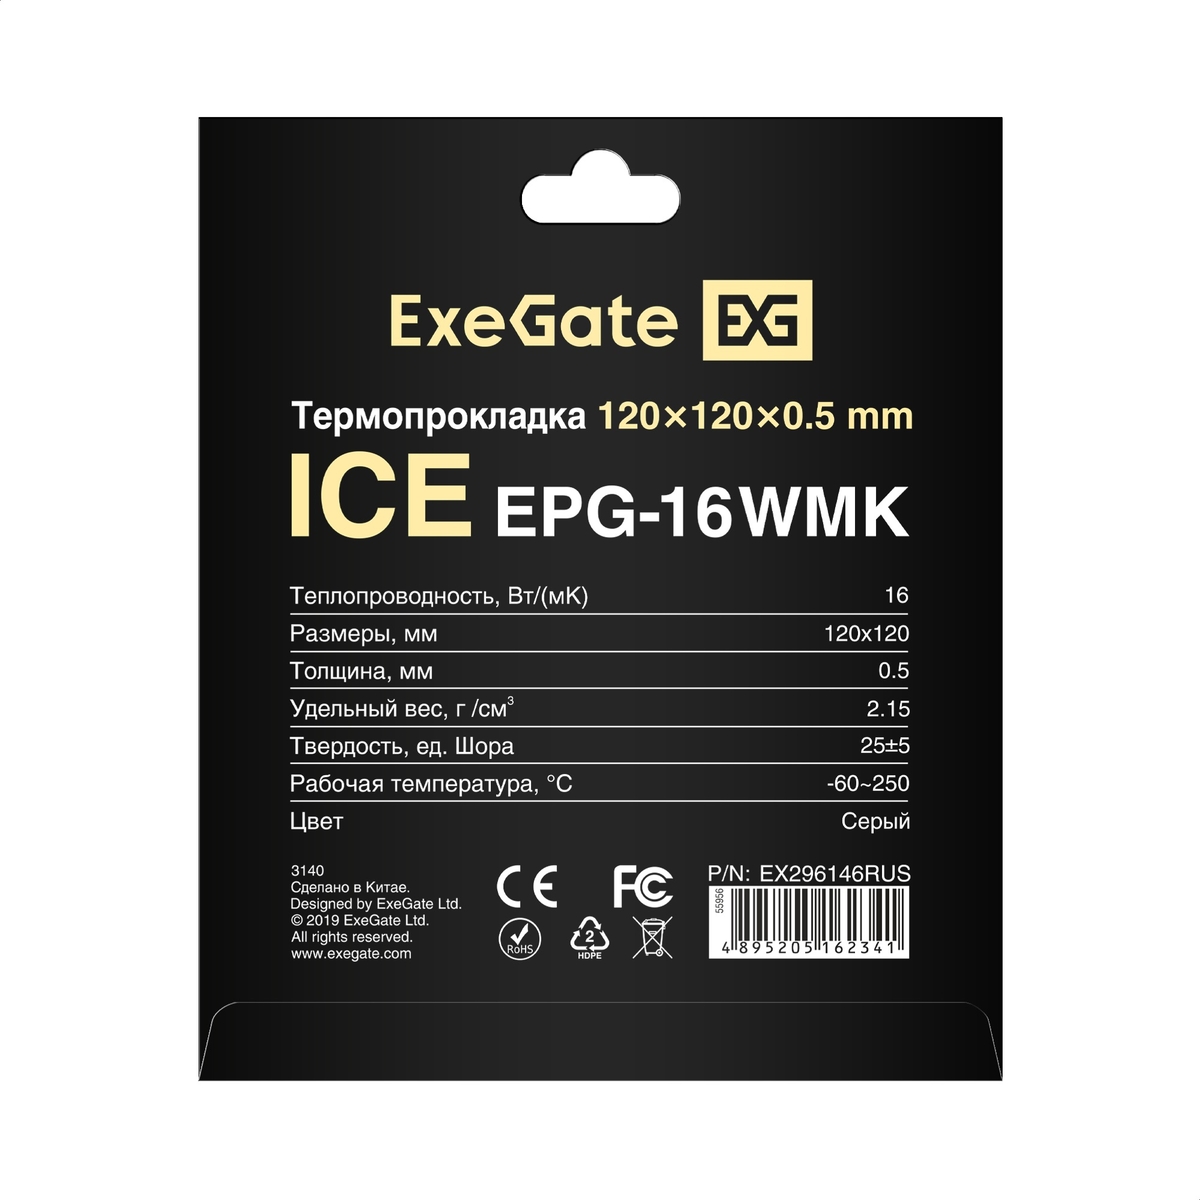 Thermal Pad ExeGate Ice EPG-16WMK 120x120x0.5